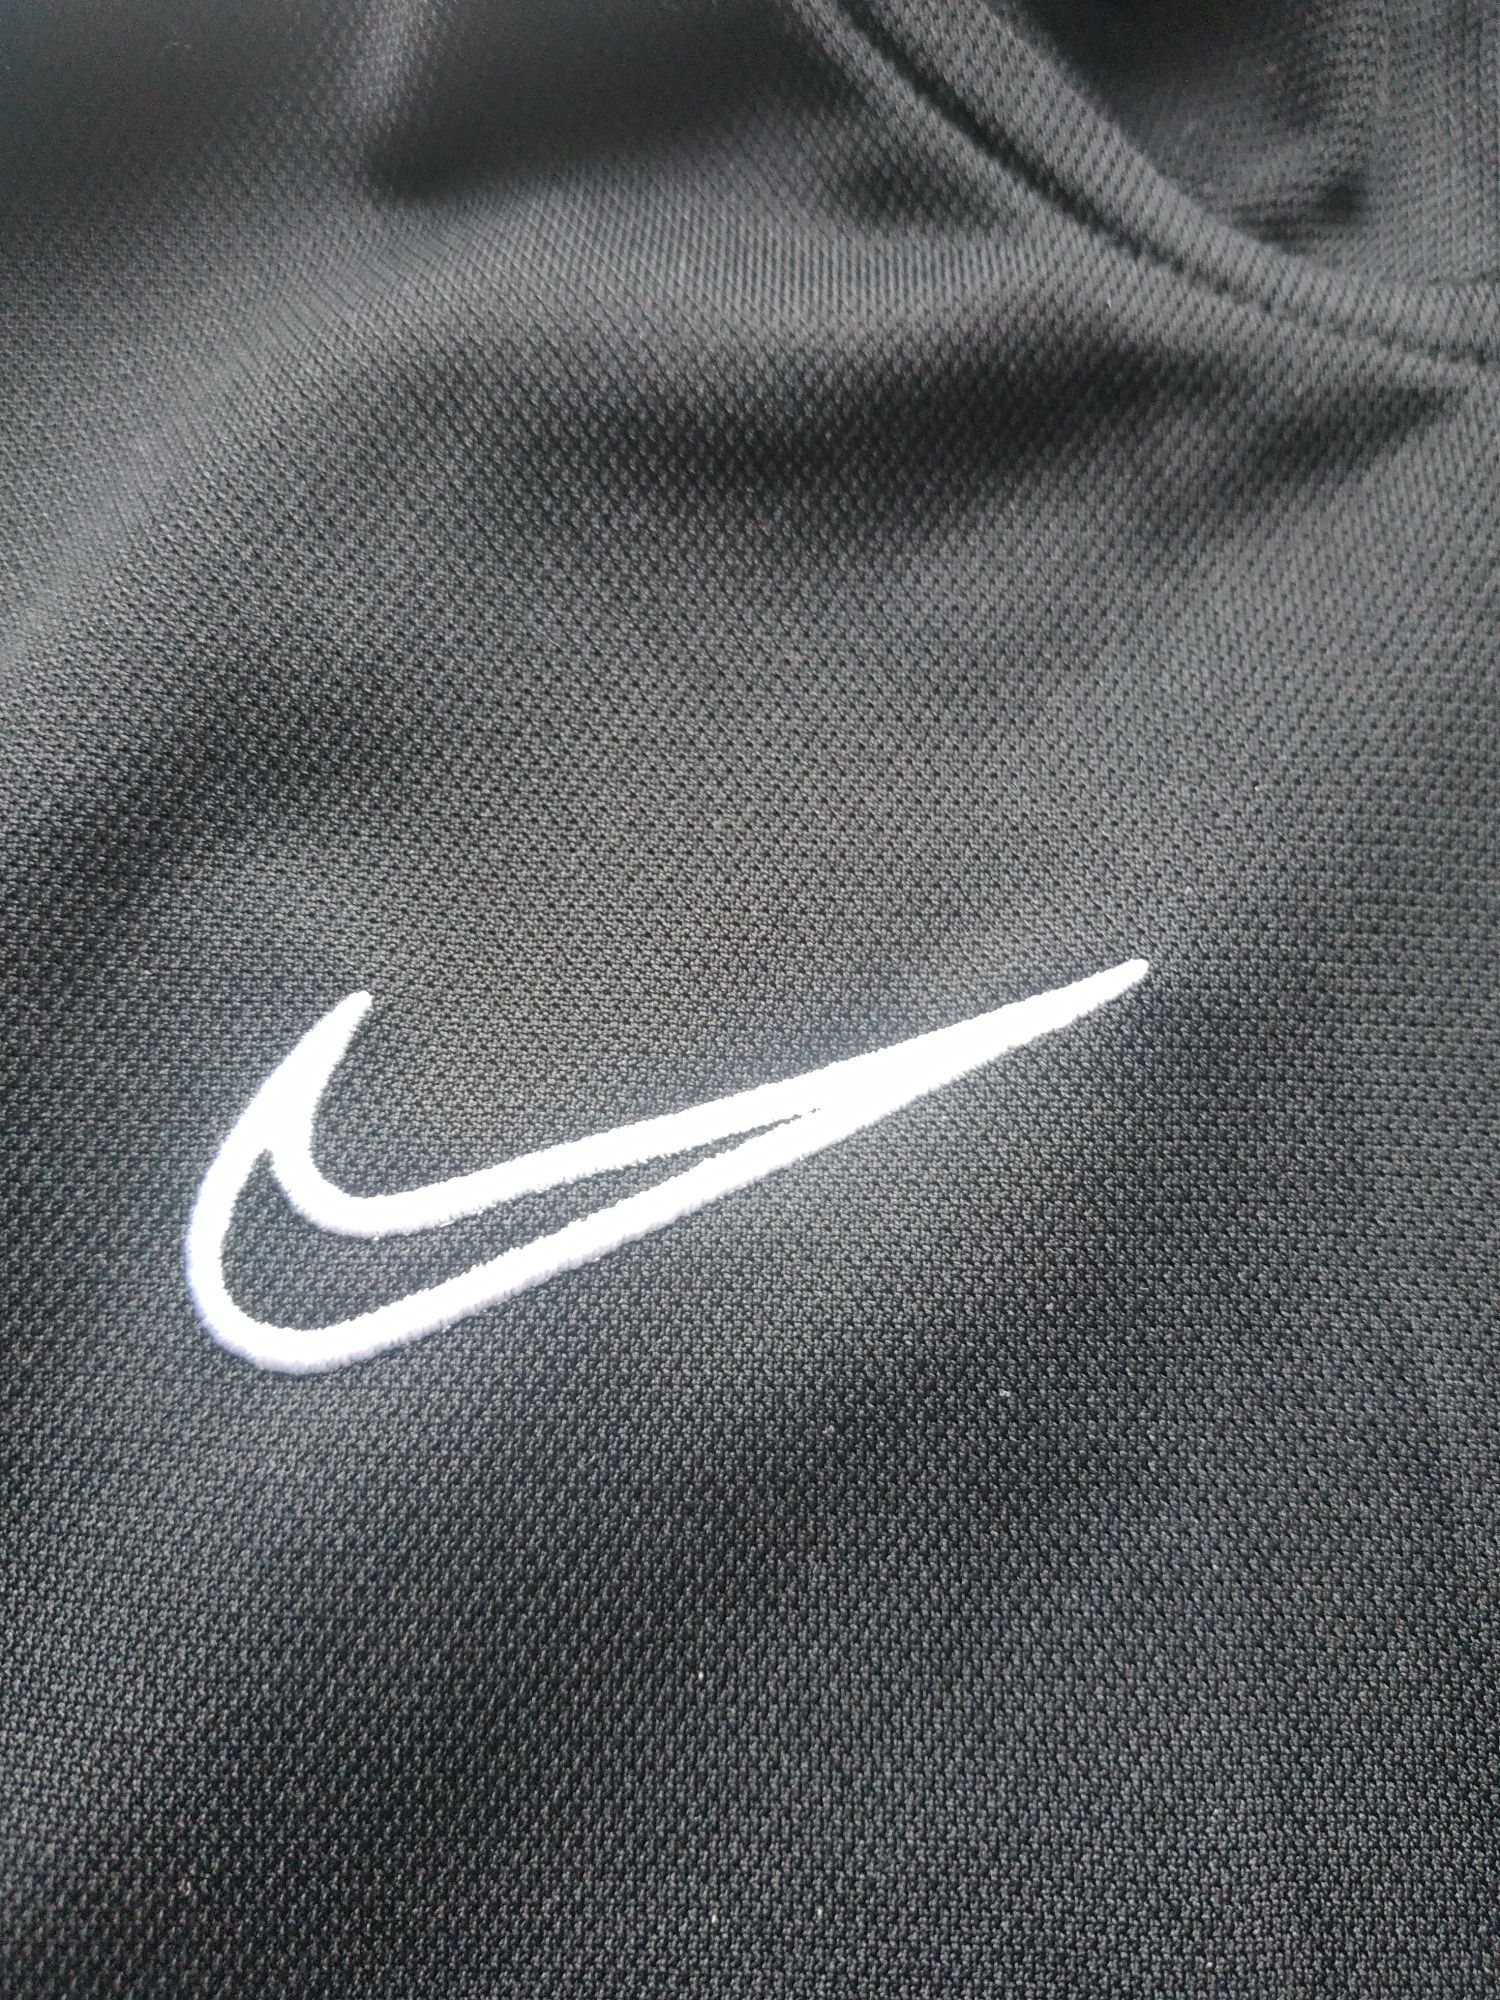 Спортивная кофта Nike dri fit на мальчика